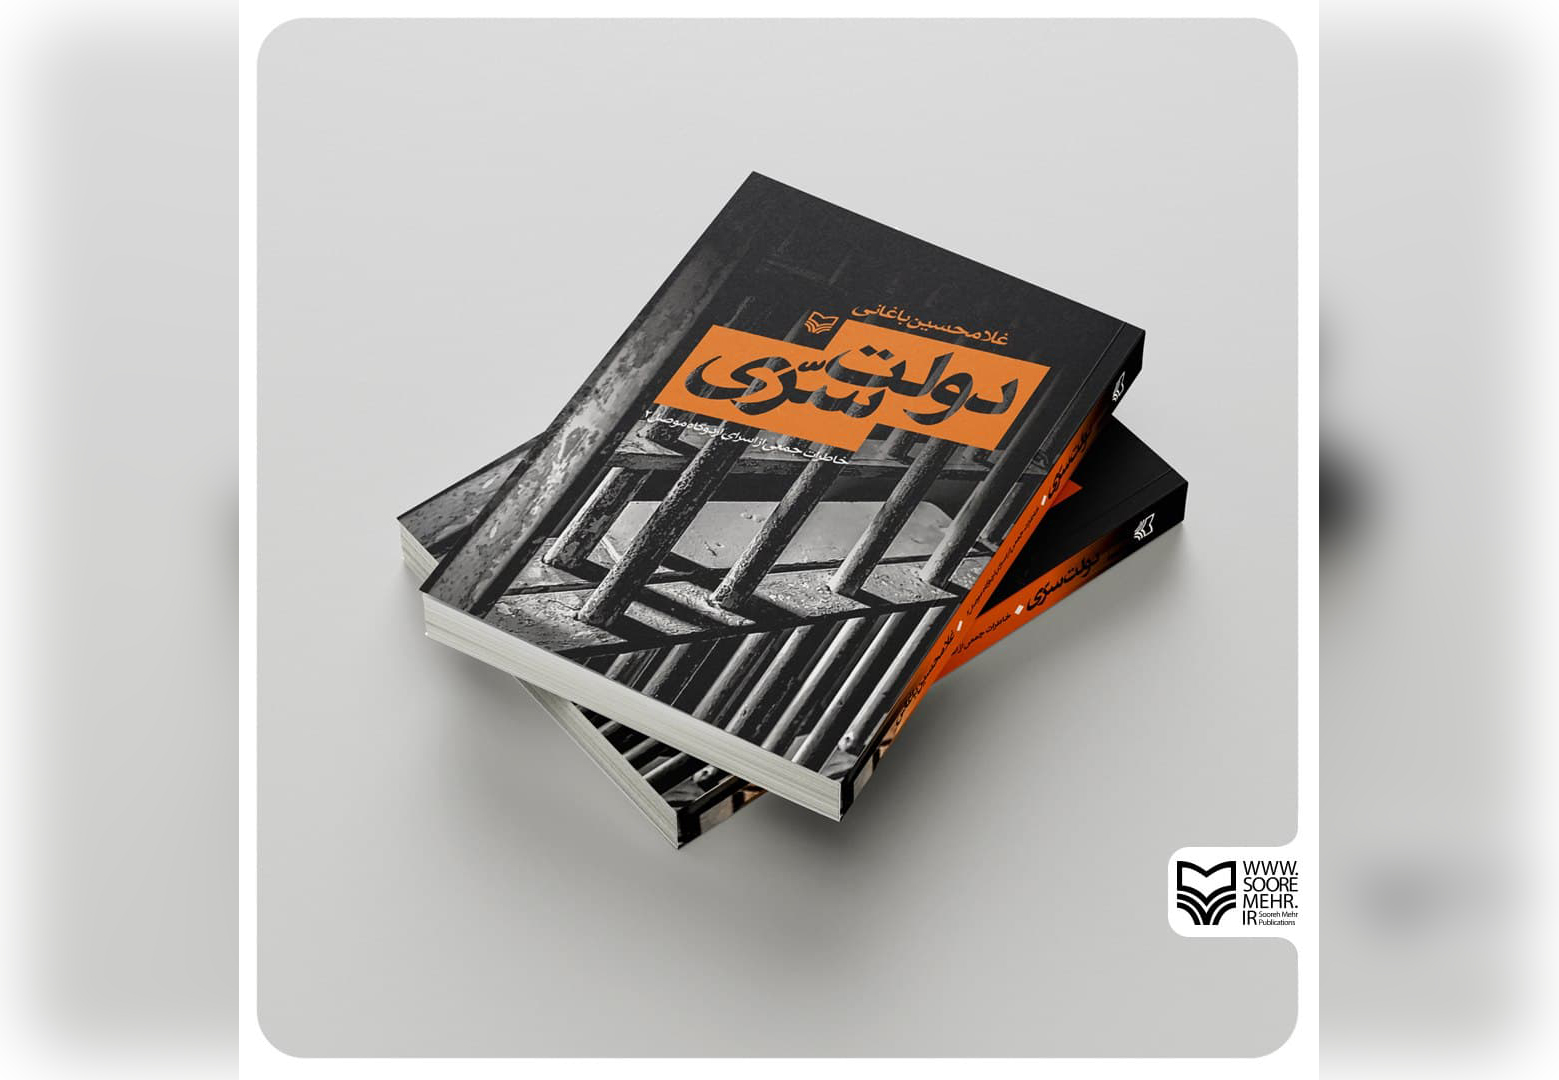 انتشارات سوره مهر کتاب «دولت سرّی» روایتی از شجاعت آزادگان را منتشر کرد